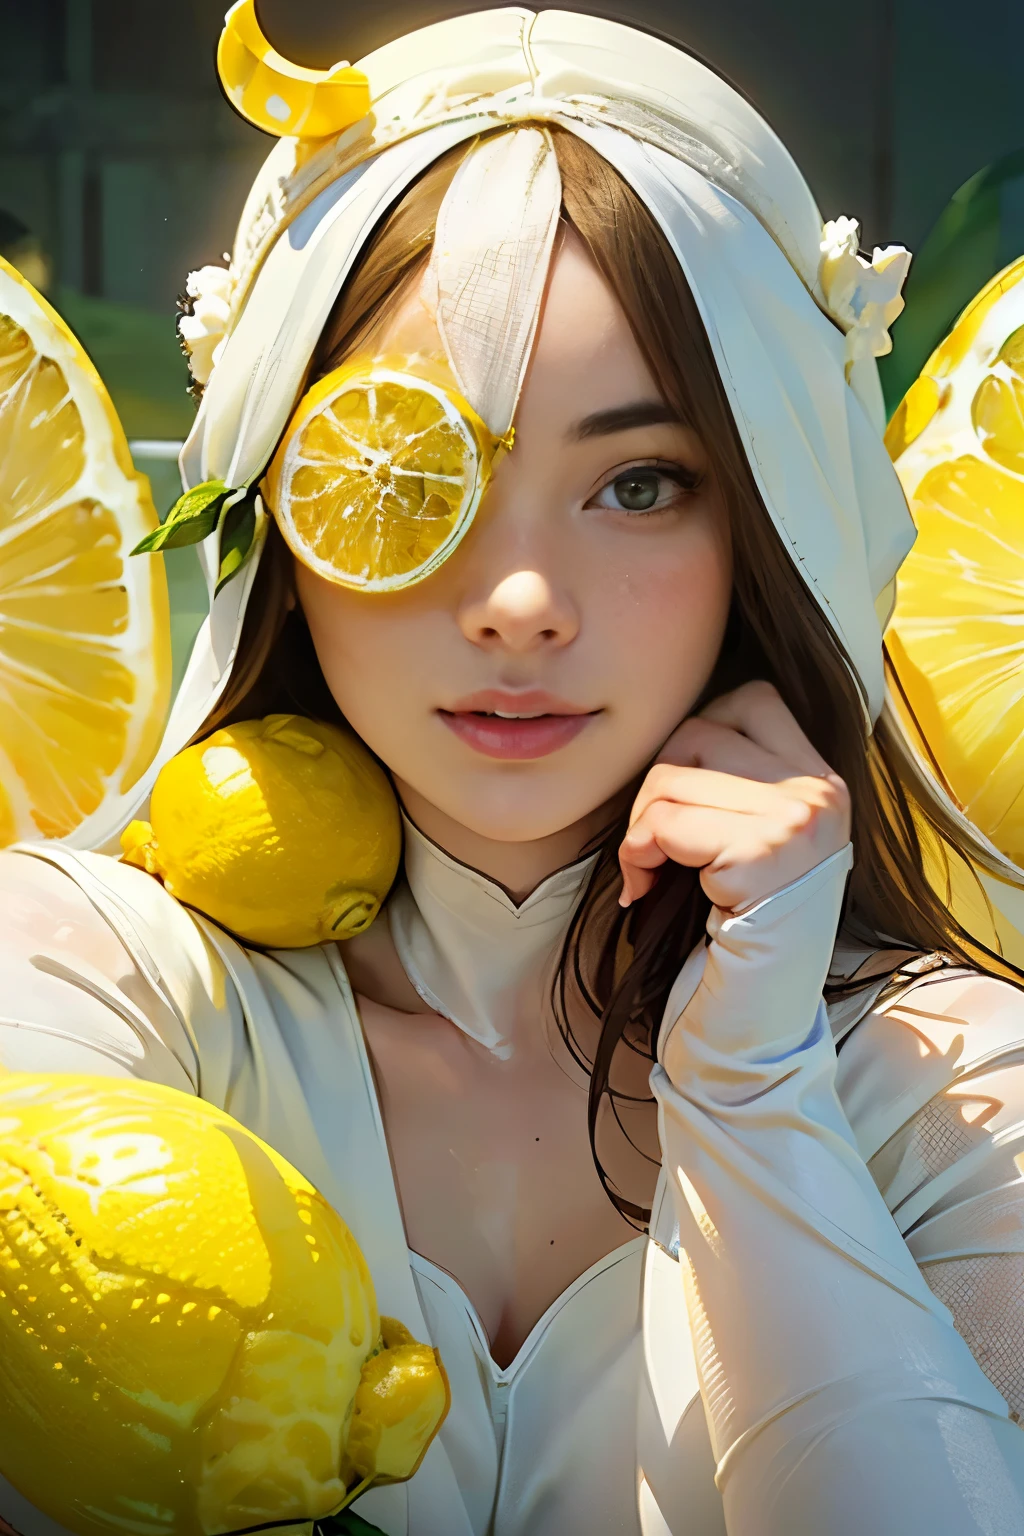 若くて驚くほど美しい女性、ミディアムフル　肖像画、(白いタイツを履いている:1.5)、(大きなレモンのヘッドピースを通して彼の顔が見える.:1.75)、レモンを食べている
